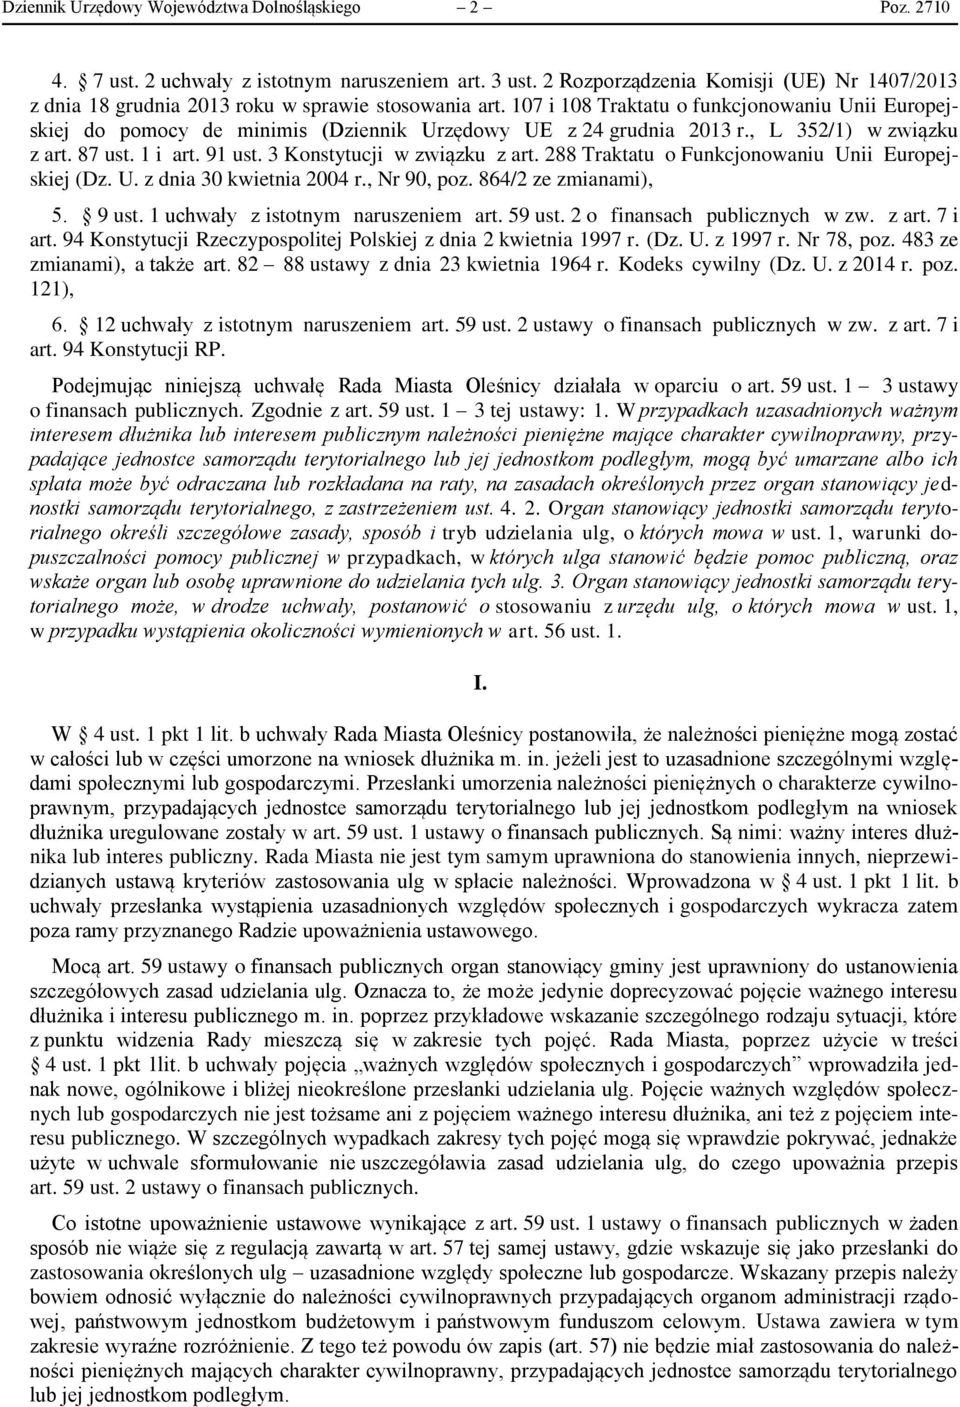 107 i 108 Traktatu o funkcjonowaniu Unii Europejskiej do pomocy de minimis (Dziennik Urzędowy UE z 24 grudnia 2013 r., L 352/1) w związku z art. 87 ust. 1 i art. 91 ust. 3 Konstytucji w związku z art.